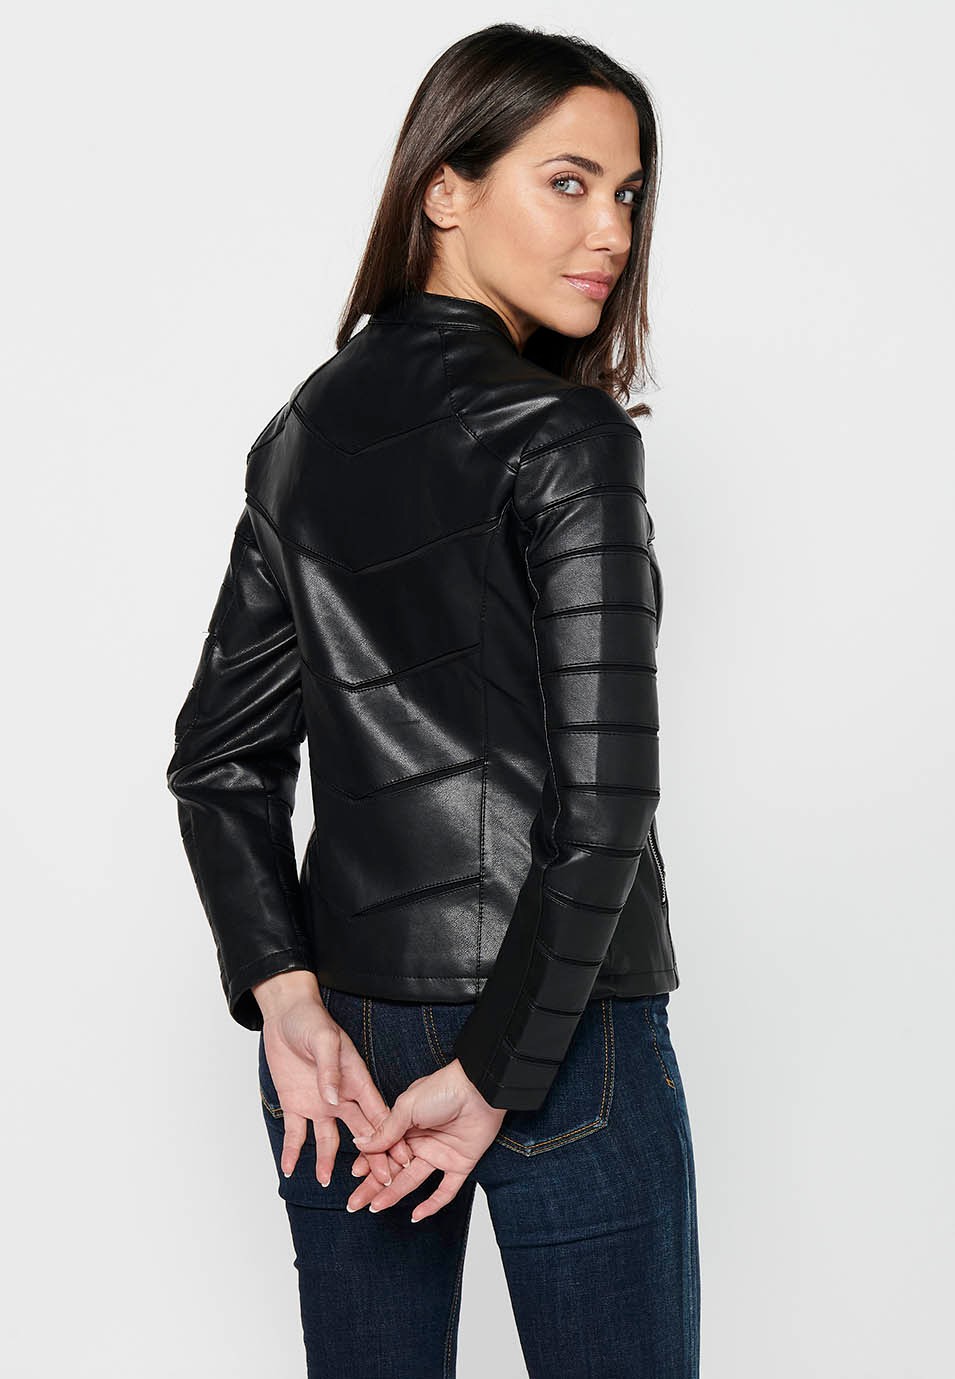 Langärmlige Jacke in Lederoptik mit Rundhalsausschnitt und Schnittdetails. Schwarzer Reißverschluss vorne für Damen